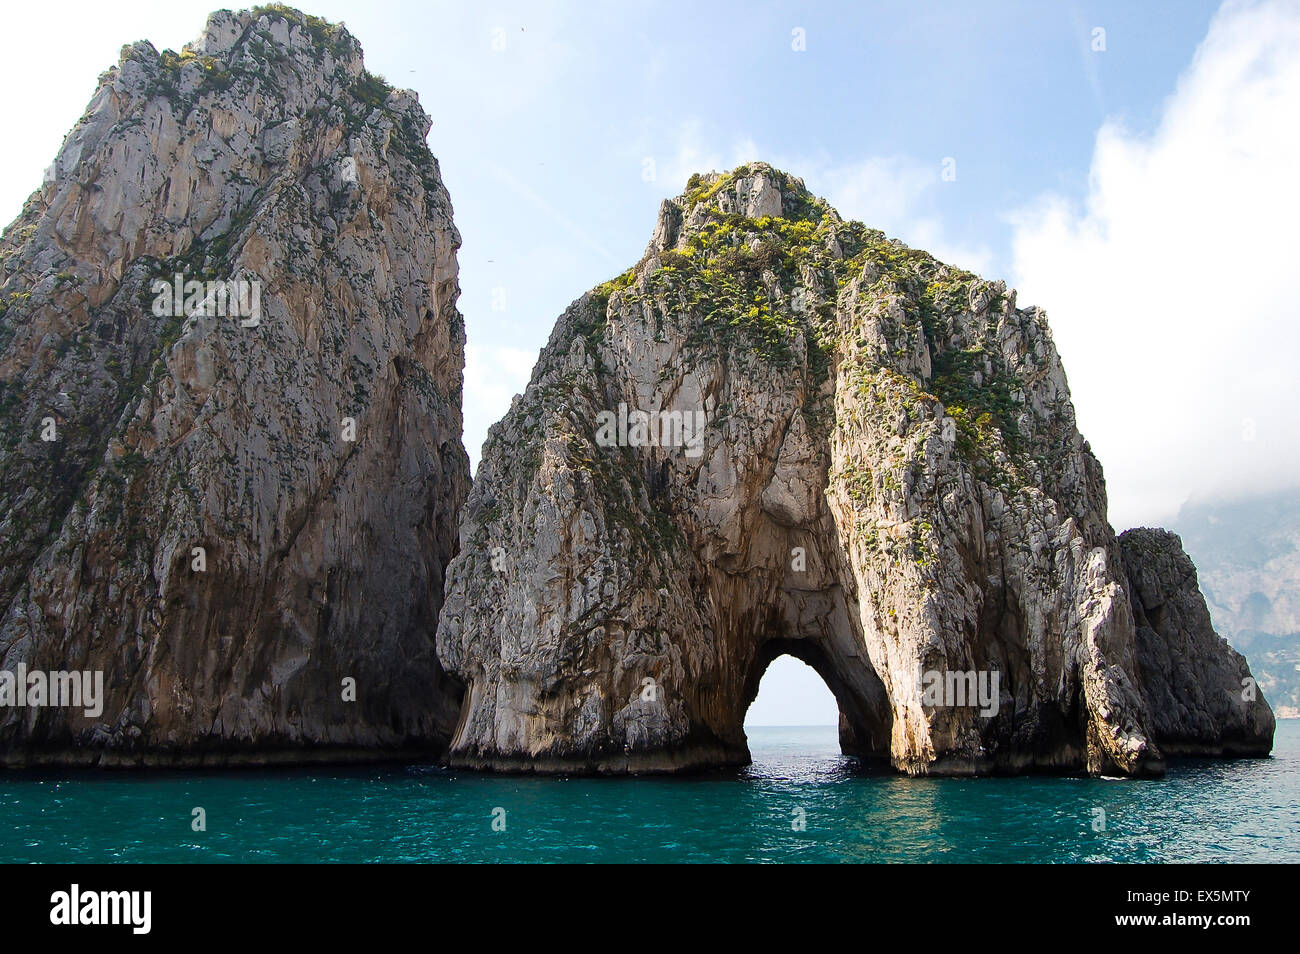 Percé - falaise de l'île de Capri - Italie Banque D'Images